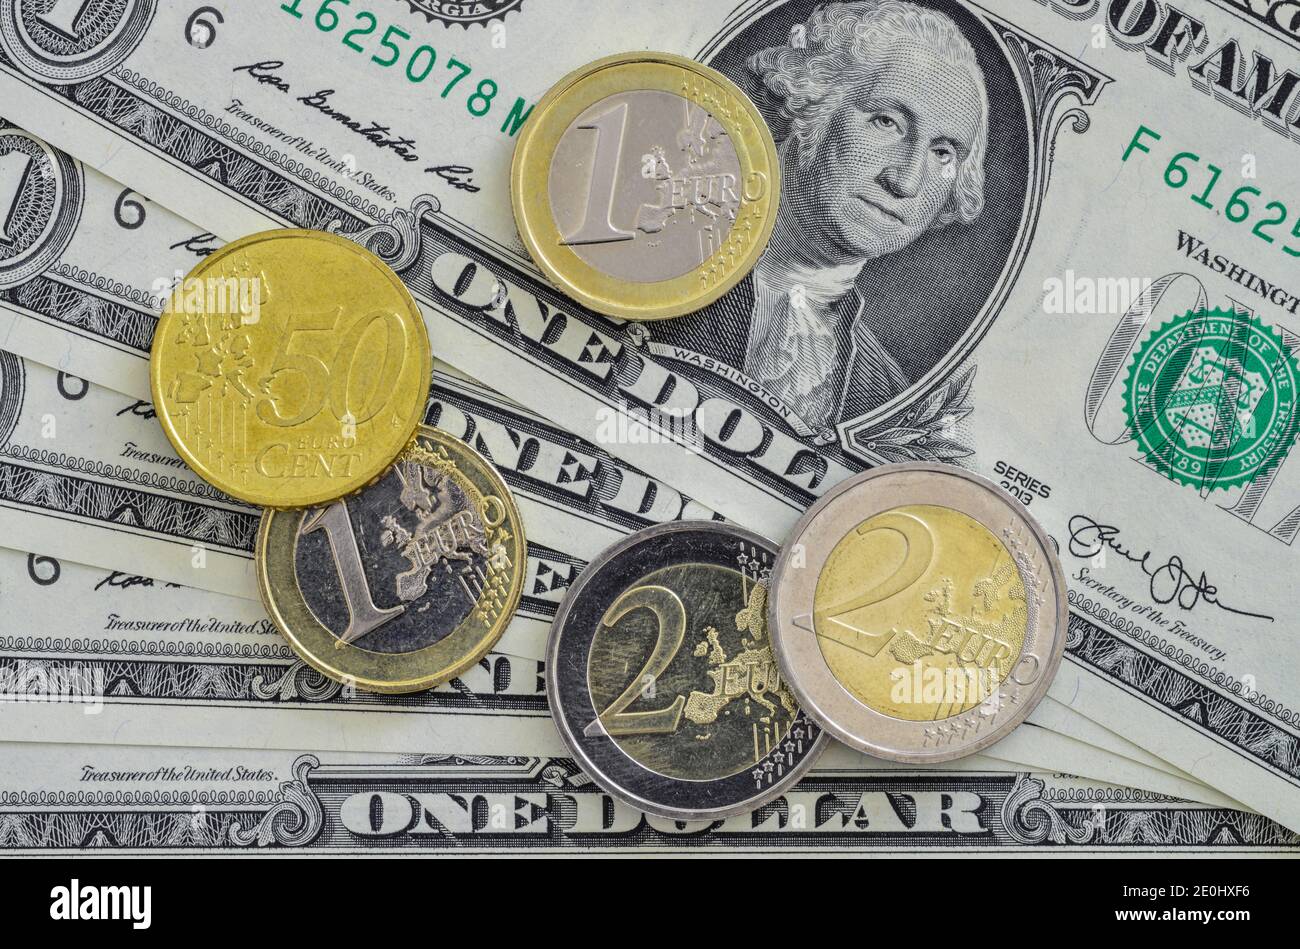 Dólar - Euromuenzen Foto de stock